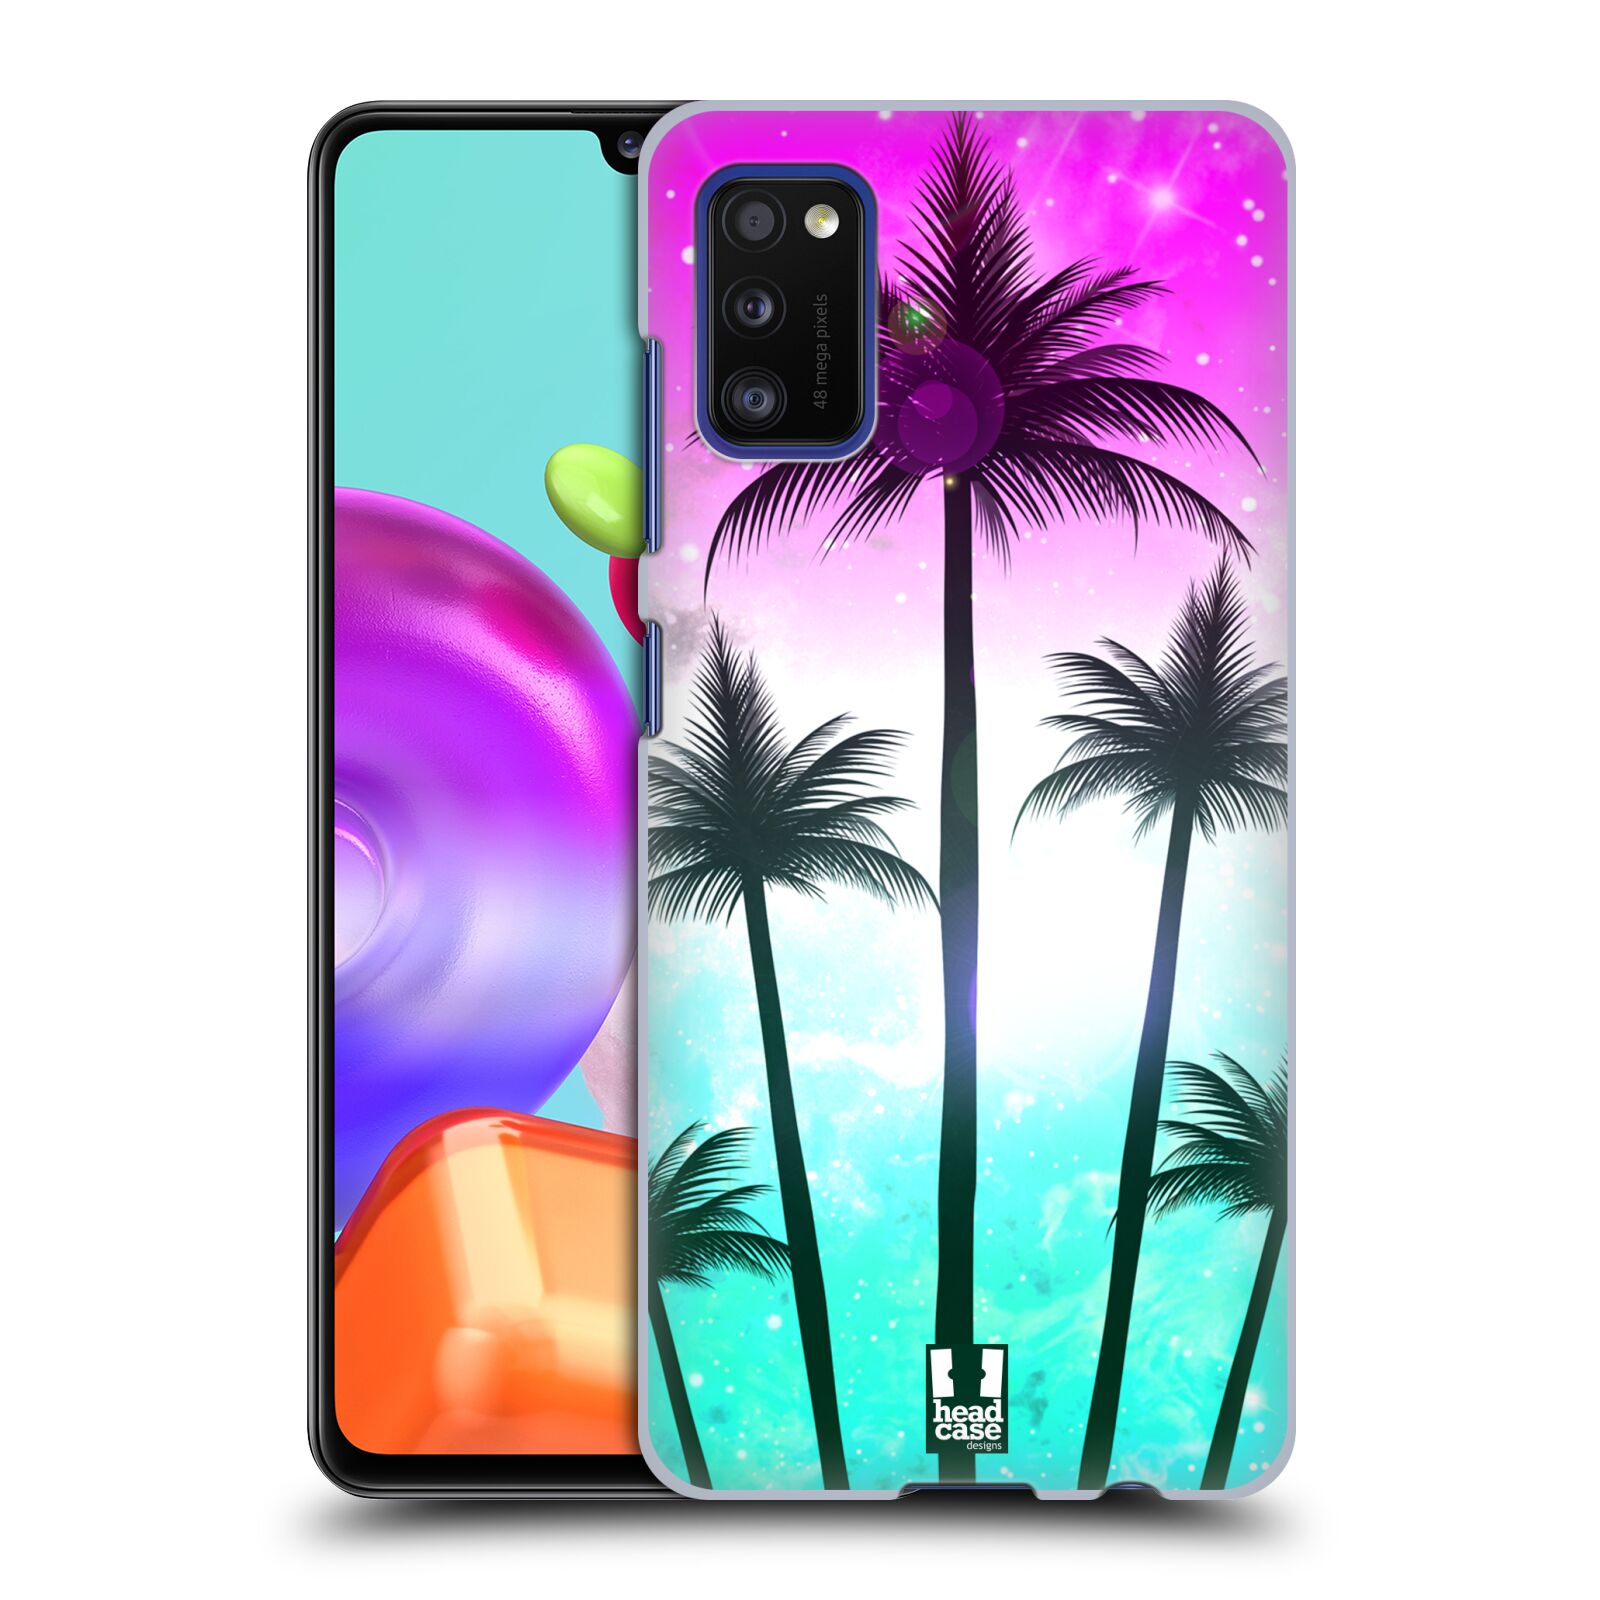 Zadní kryt na mobil Samsung Galaxy A41 vzor Kreslený motiv silueta moře a palmy RŮŽOVÁ A TYRKYS